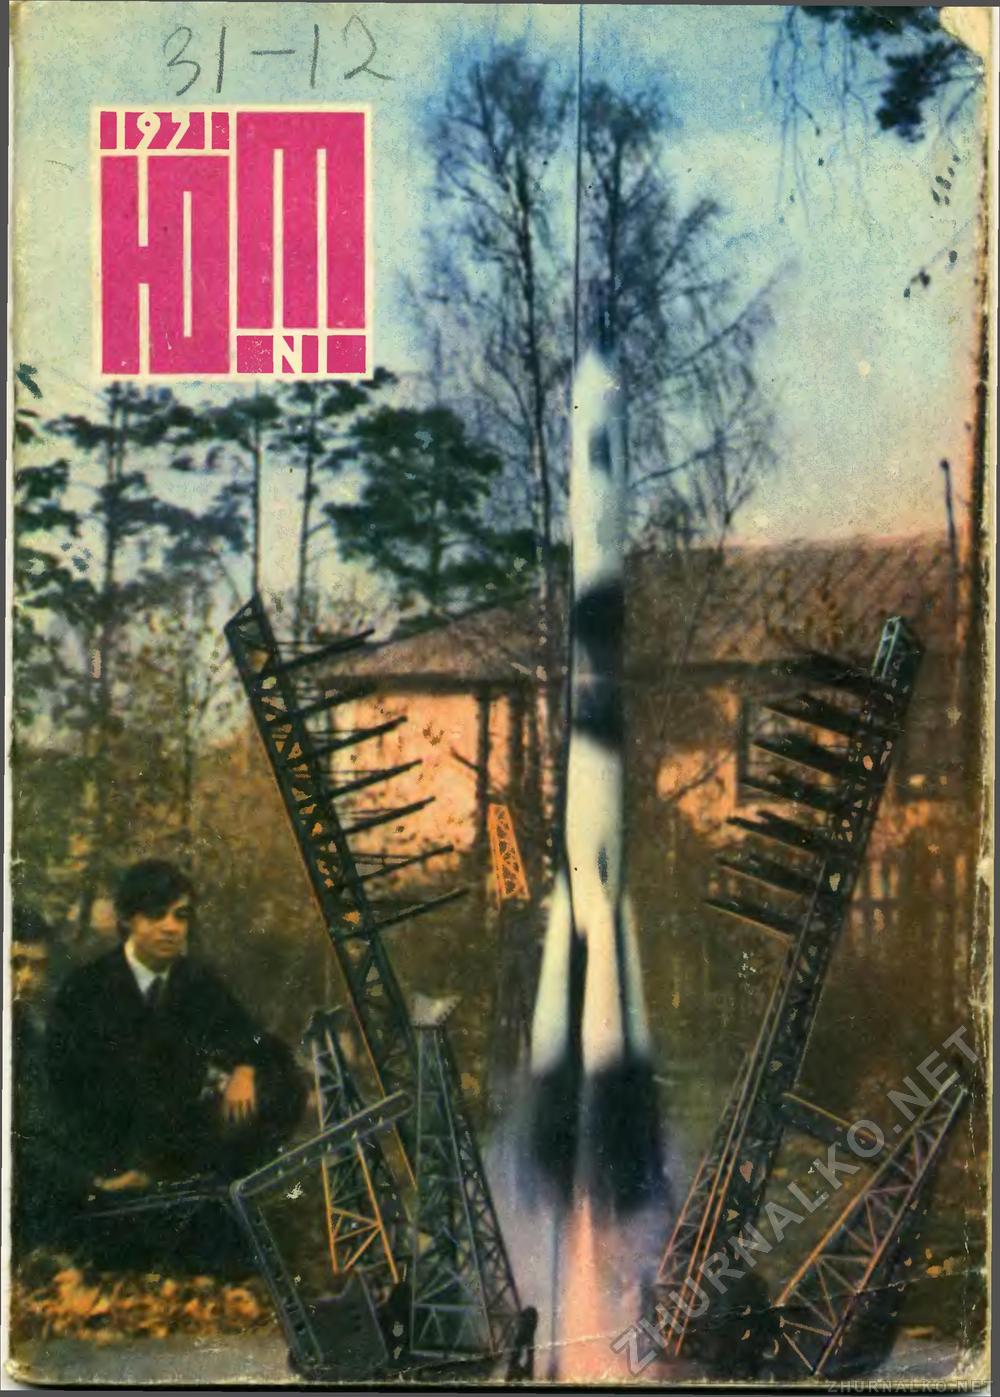   1971-01,  1